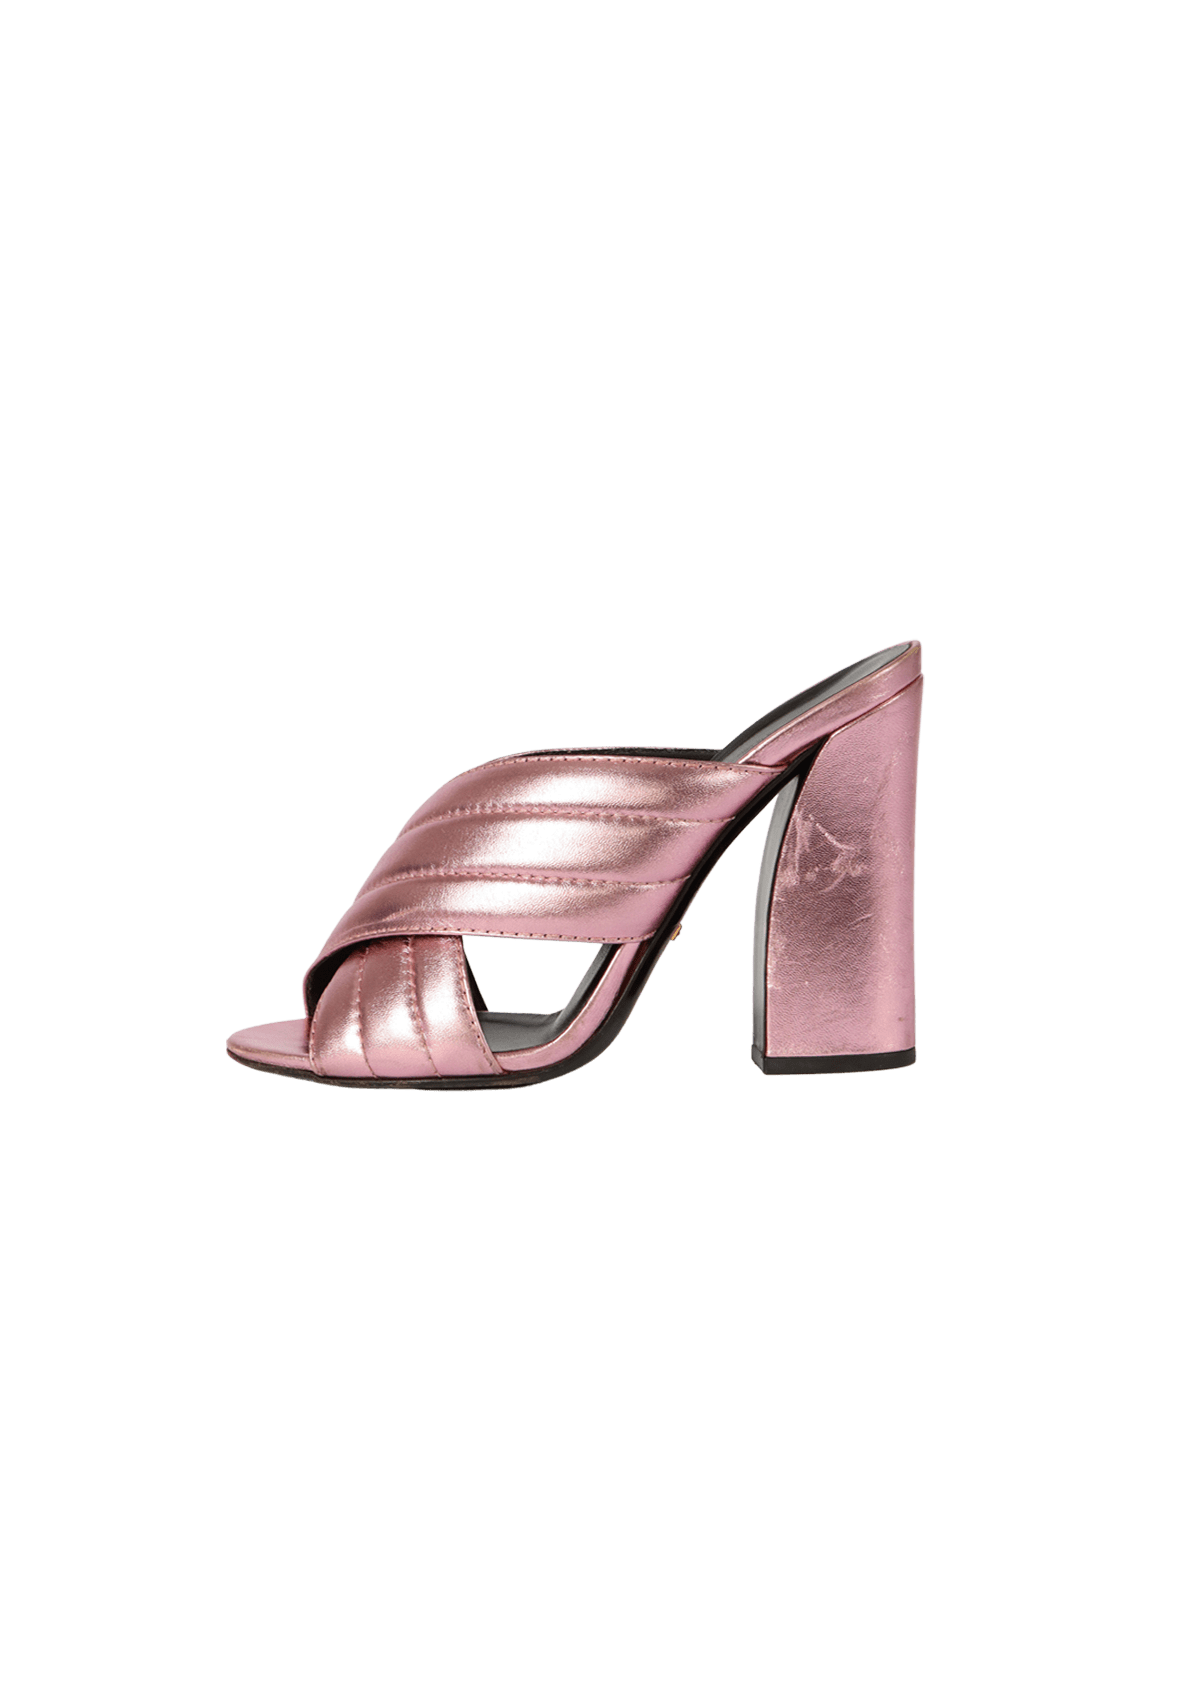 Louis Vuitton Syracusa Wedge Sandal - Sofia Coppola's Favorites